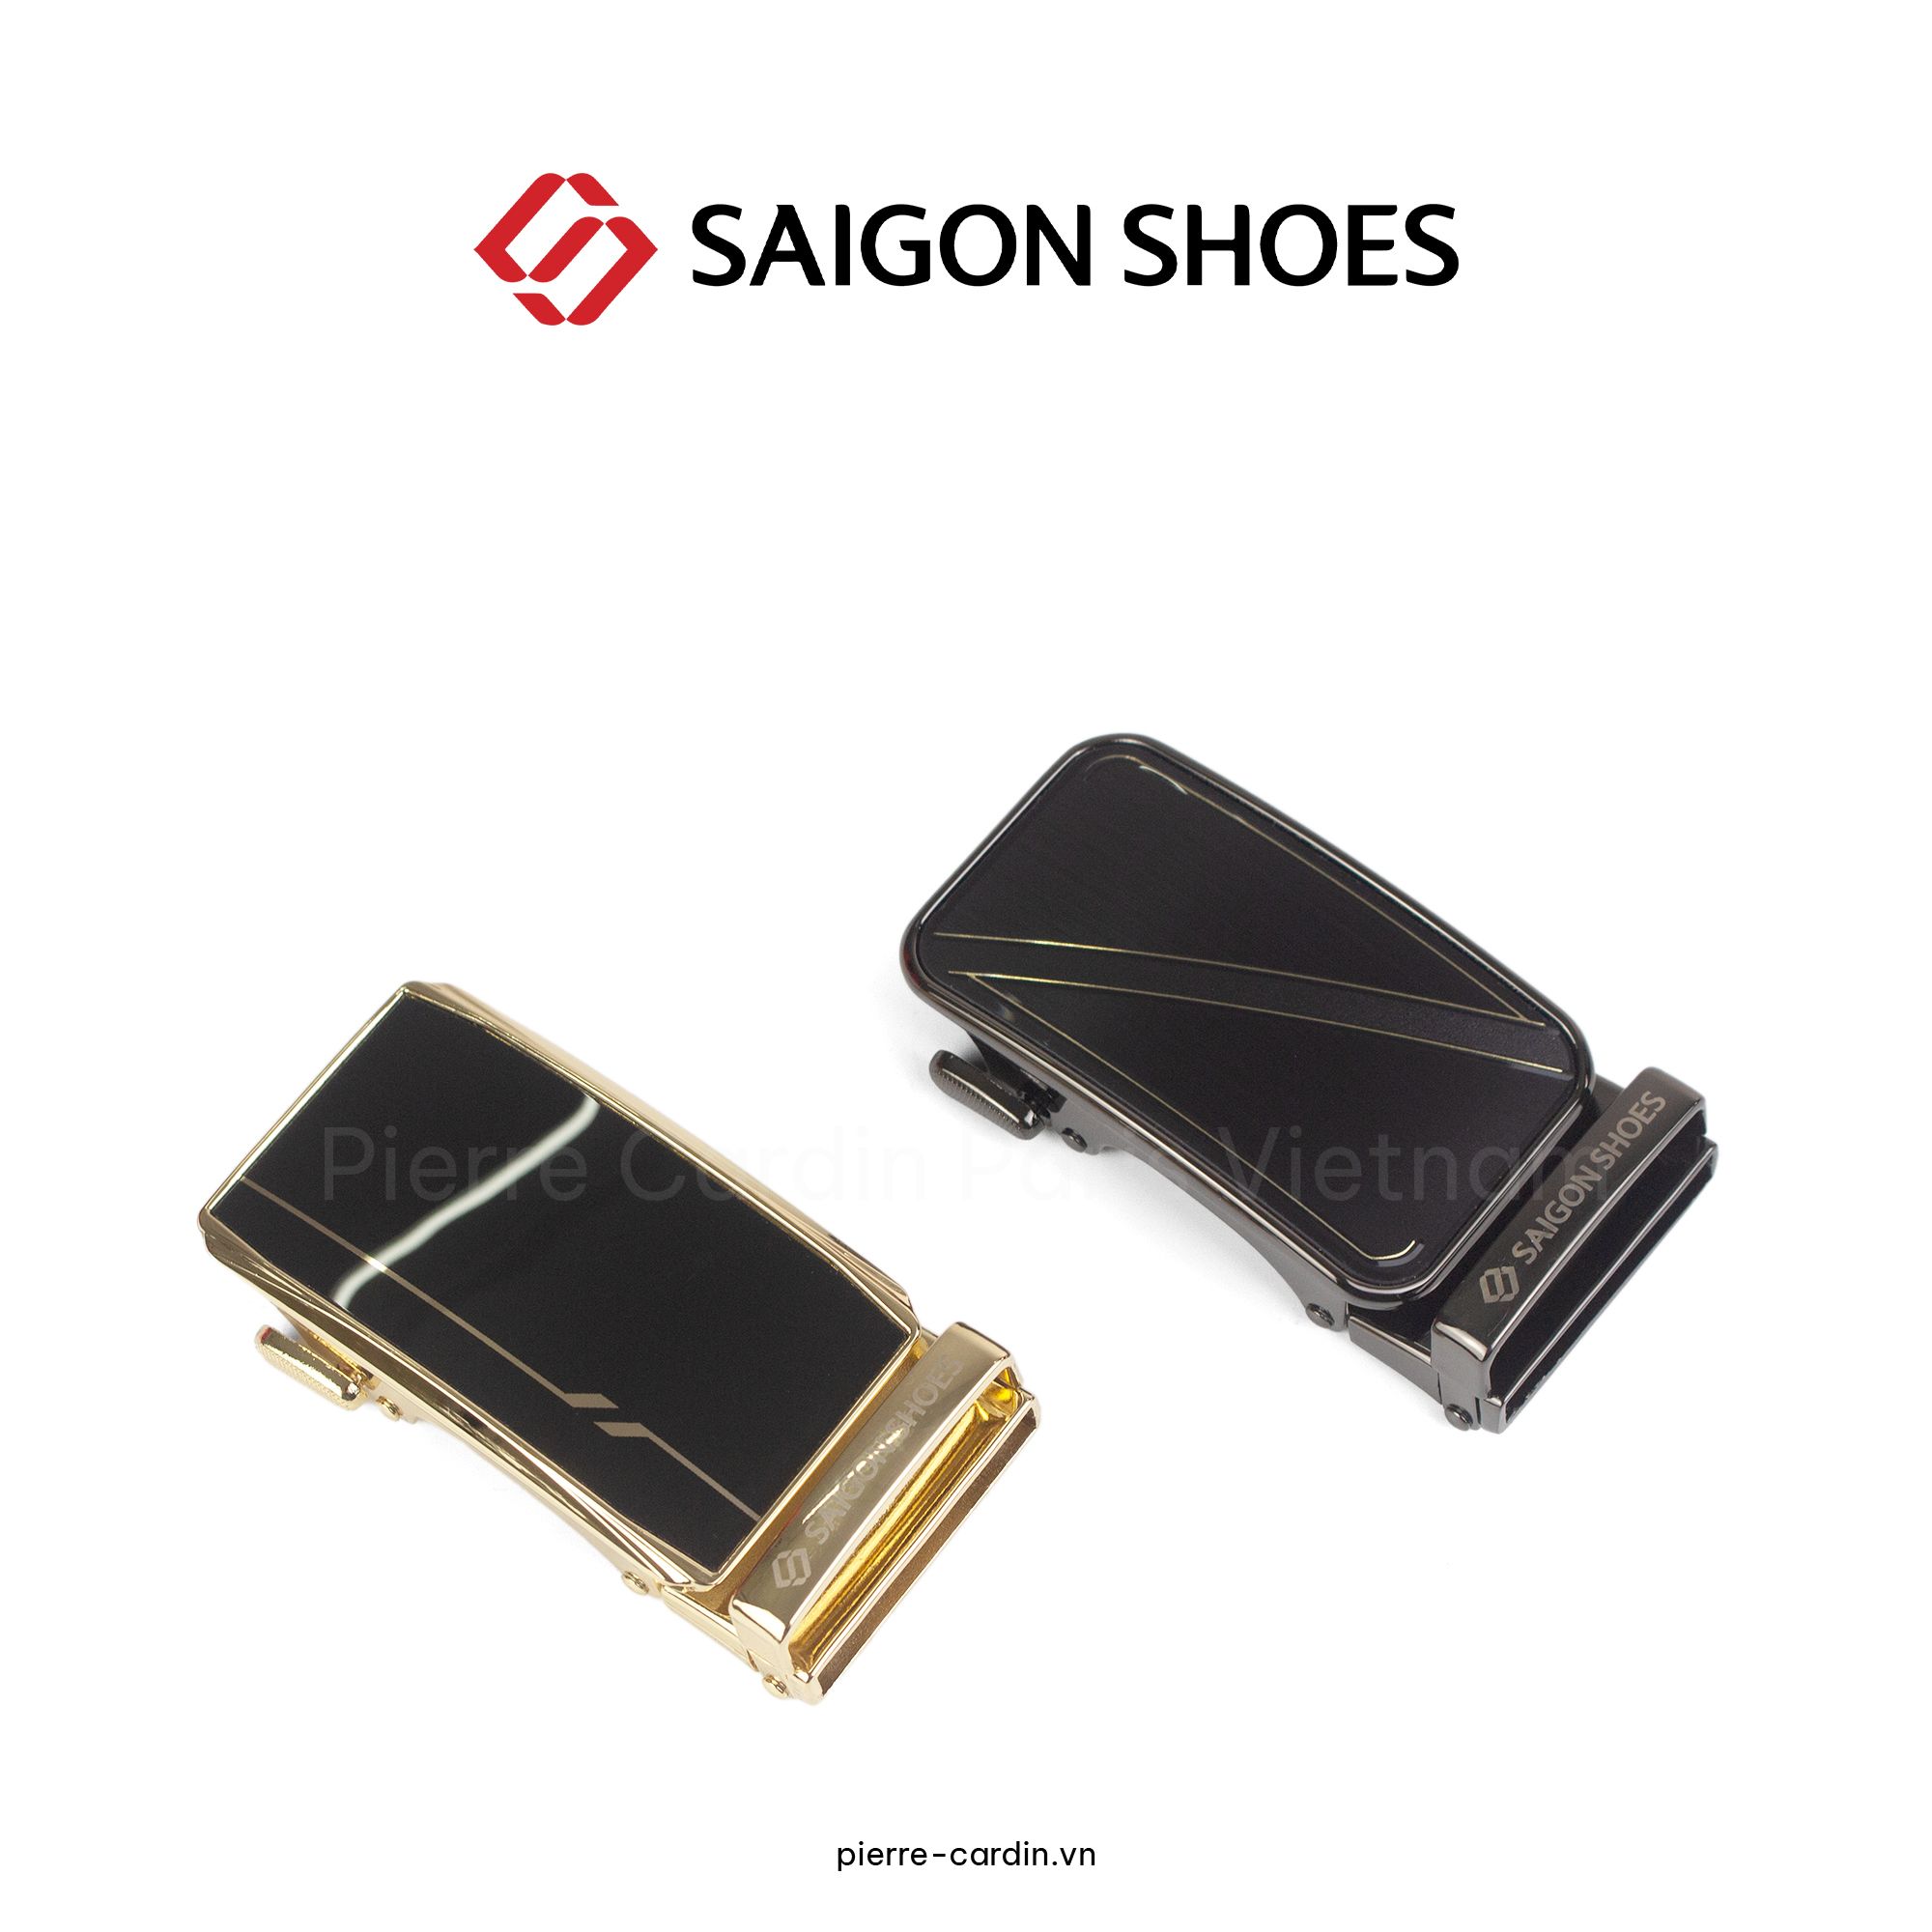 Pierre Cardin Paris Vietnam: Bộ Combo Thắt Lưng Cao Cấp Saigon Shoes  - SGMBLLI 100